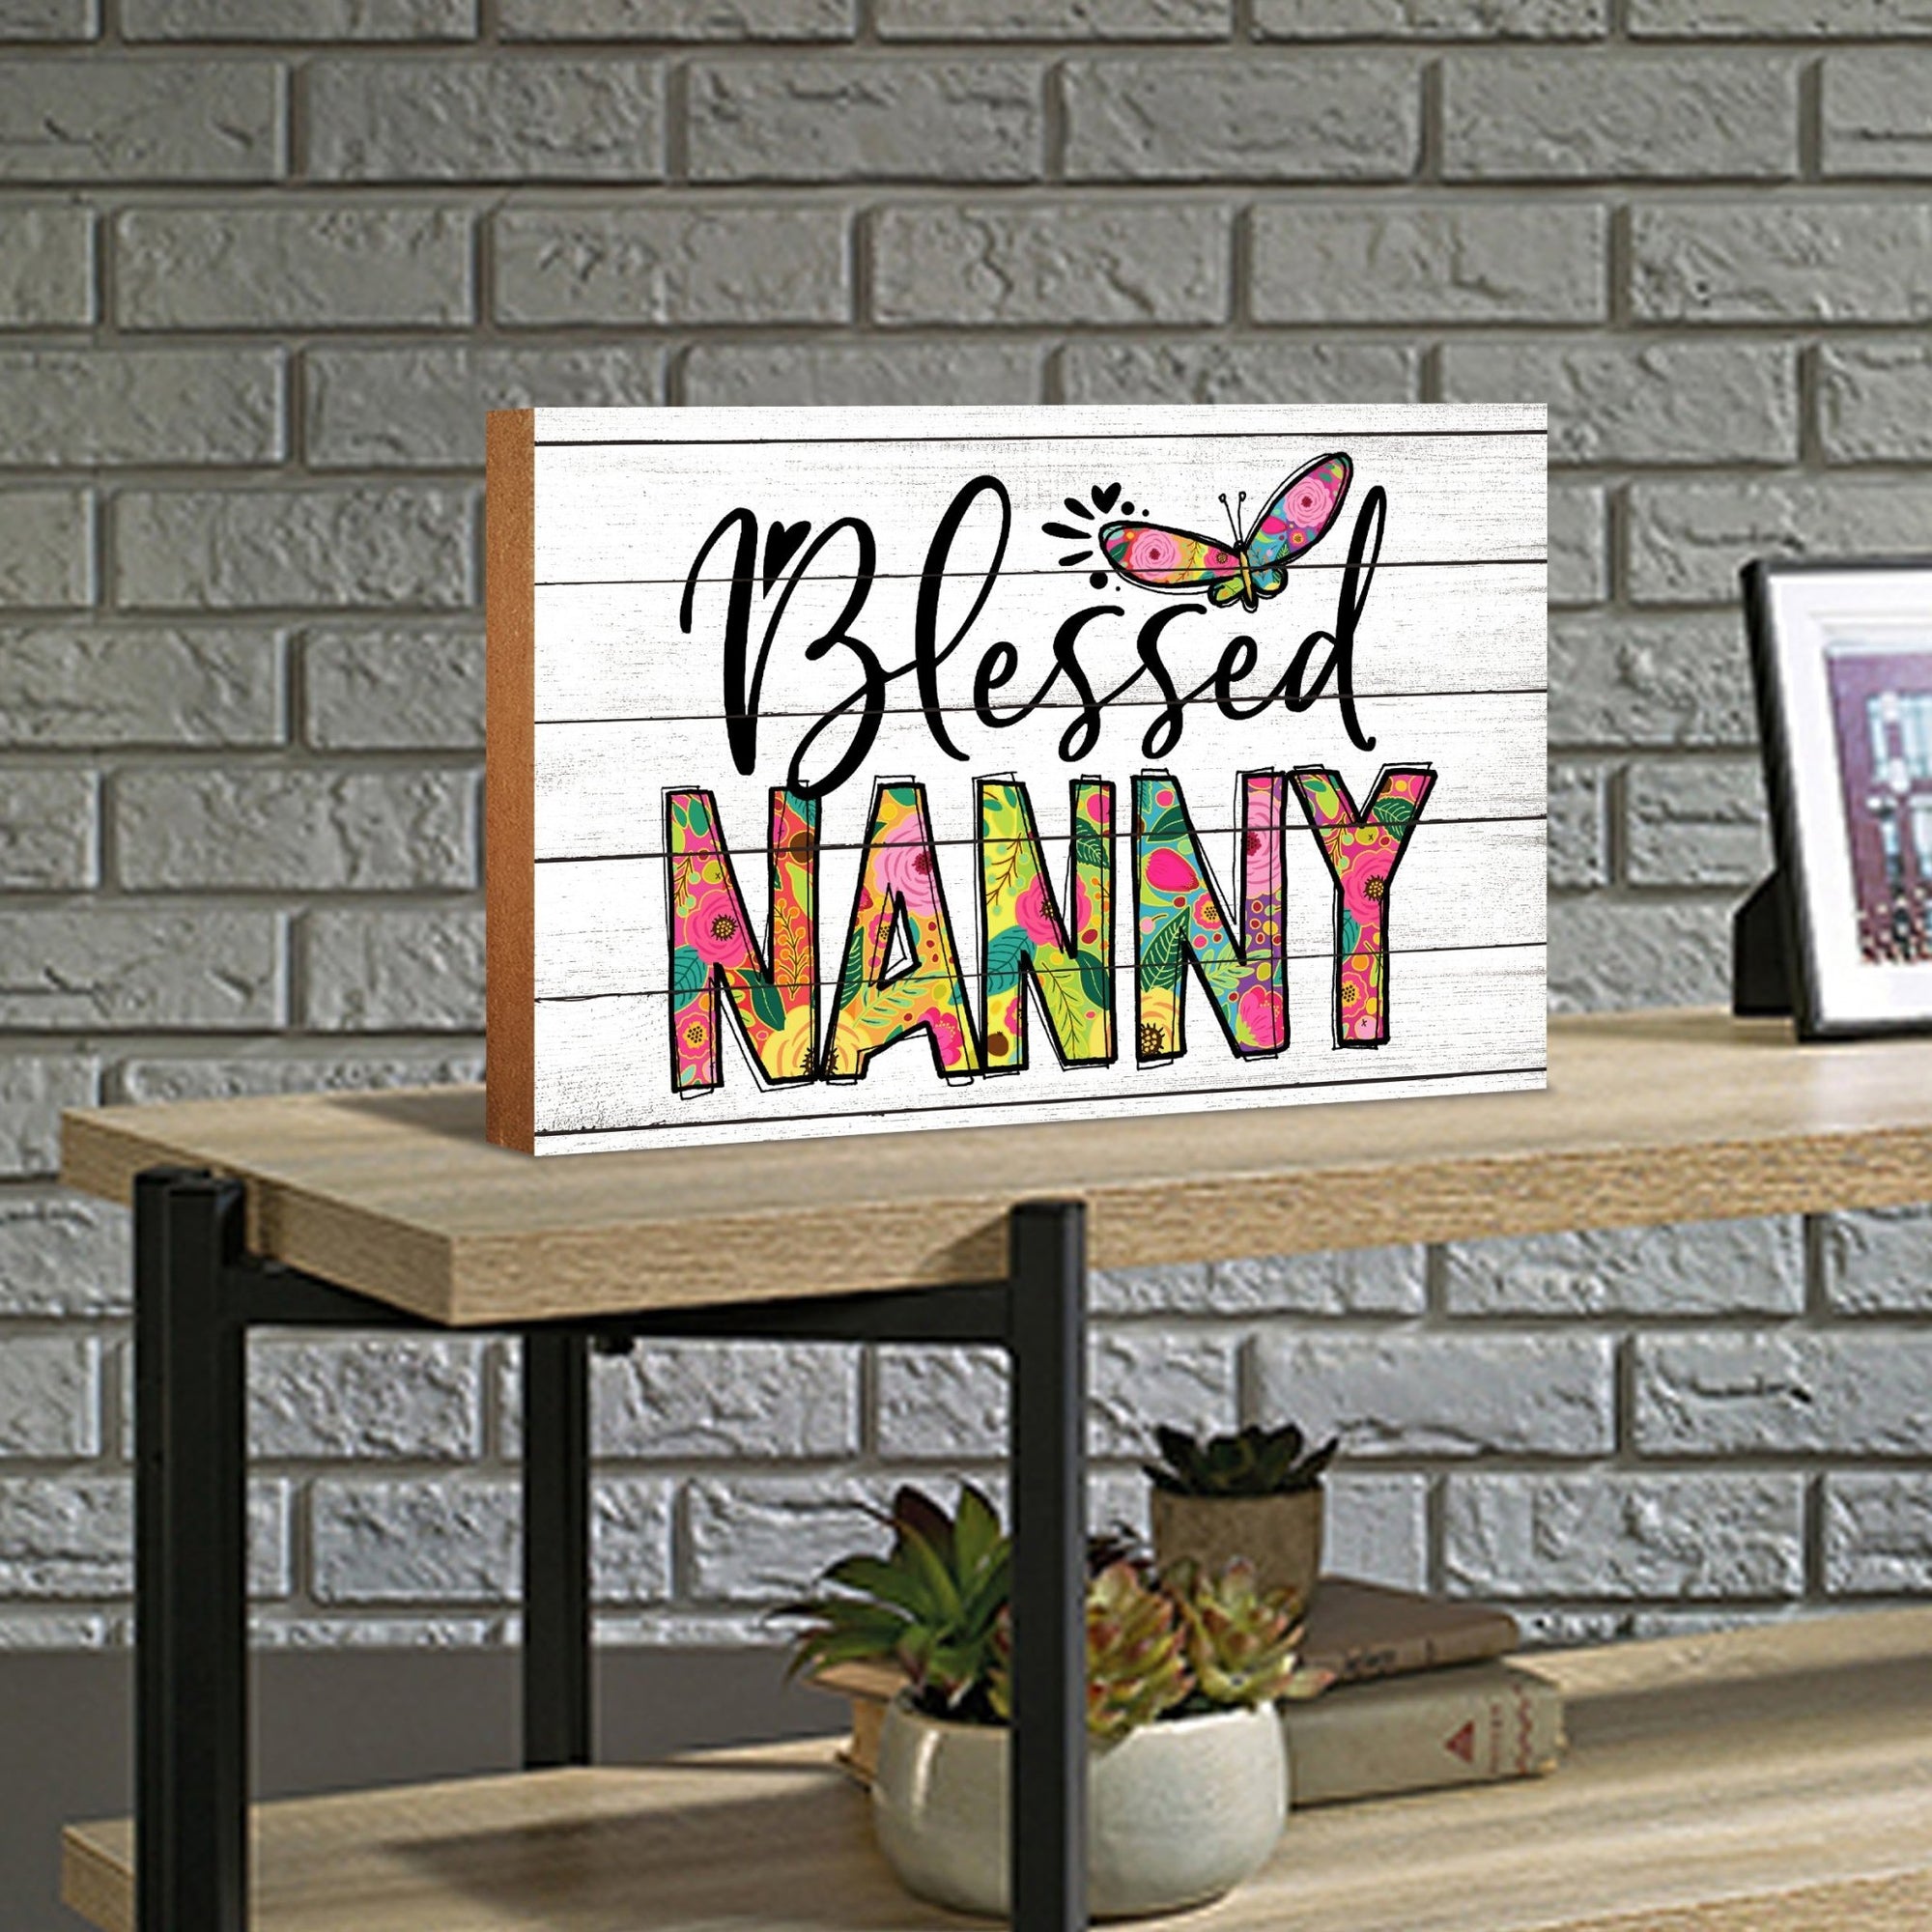 Modern-Inspired White Wooden Graffiti Art Shelf Sitter Gift Idea & Home Décor - Blessed Nanny - LifeSong Milestones